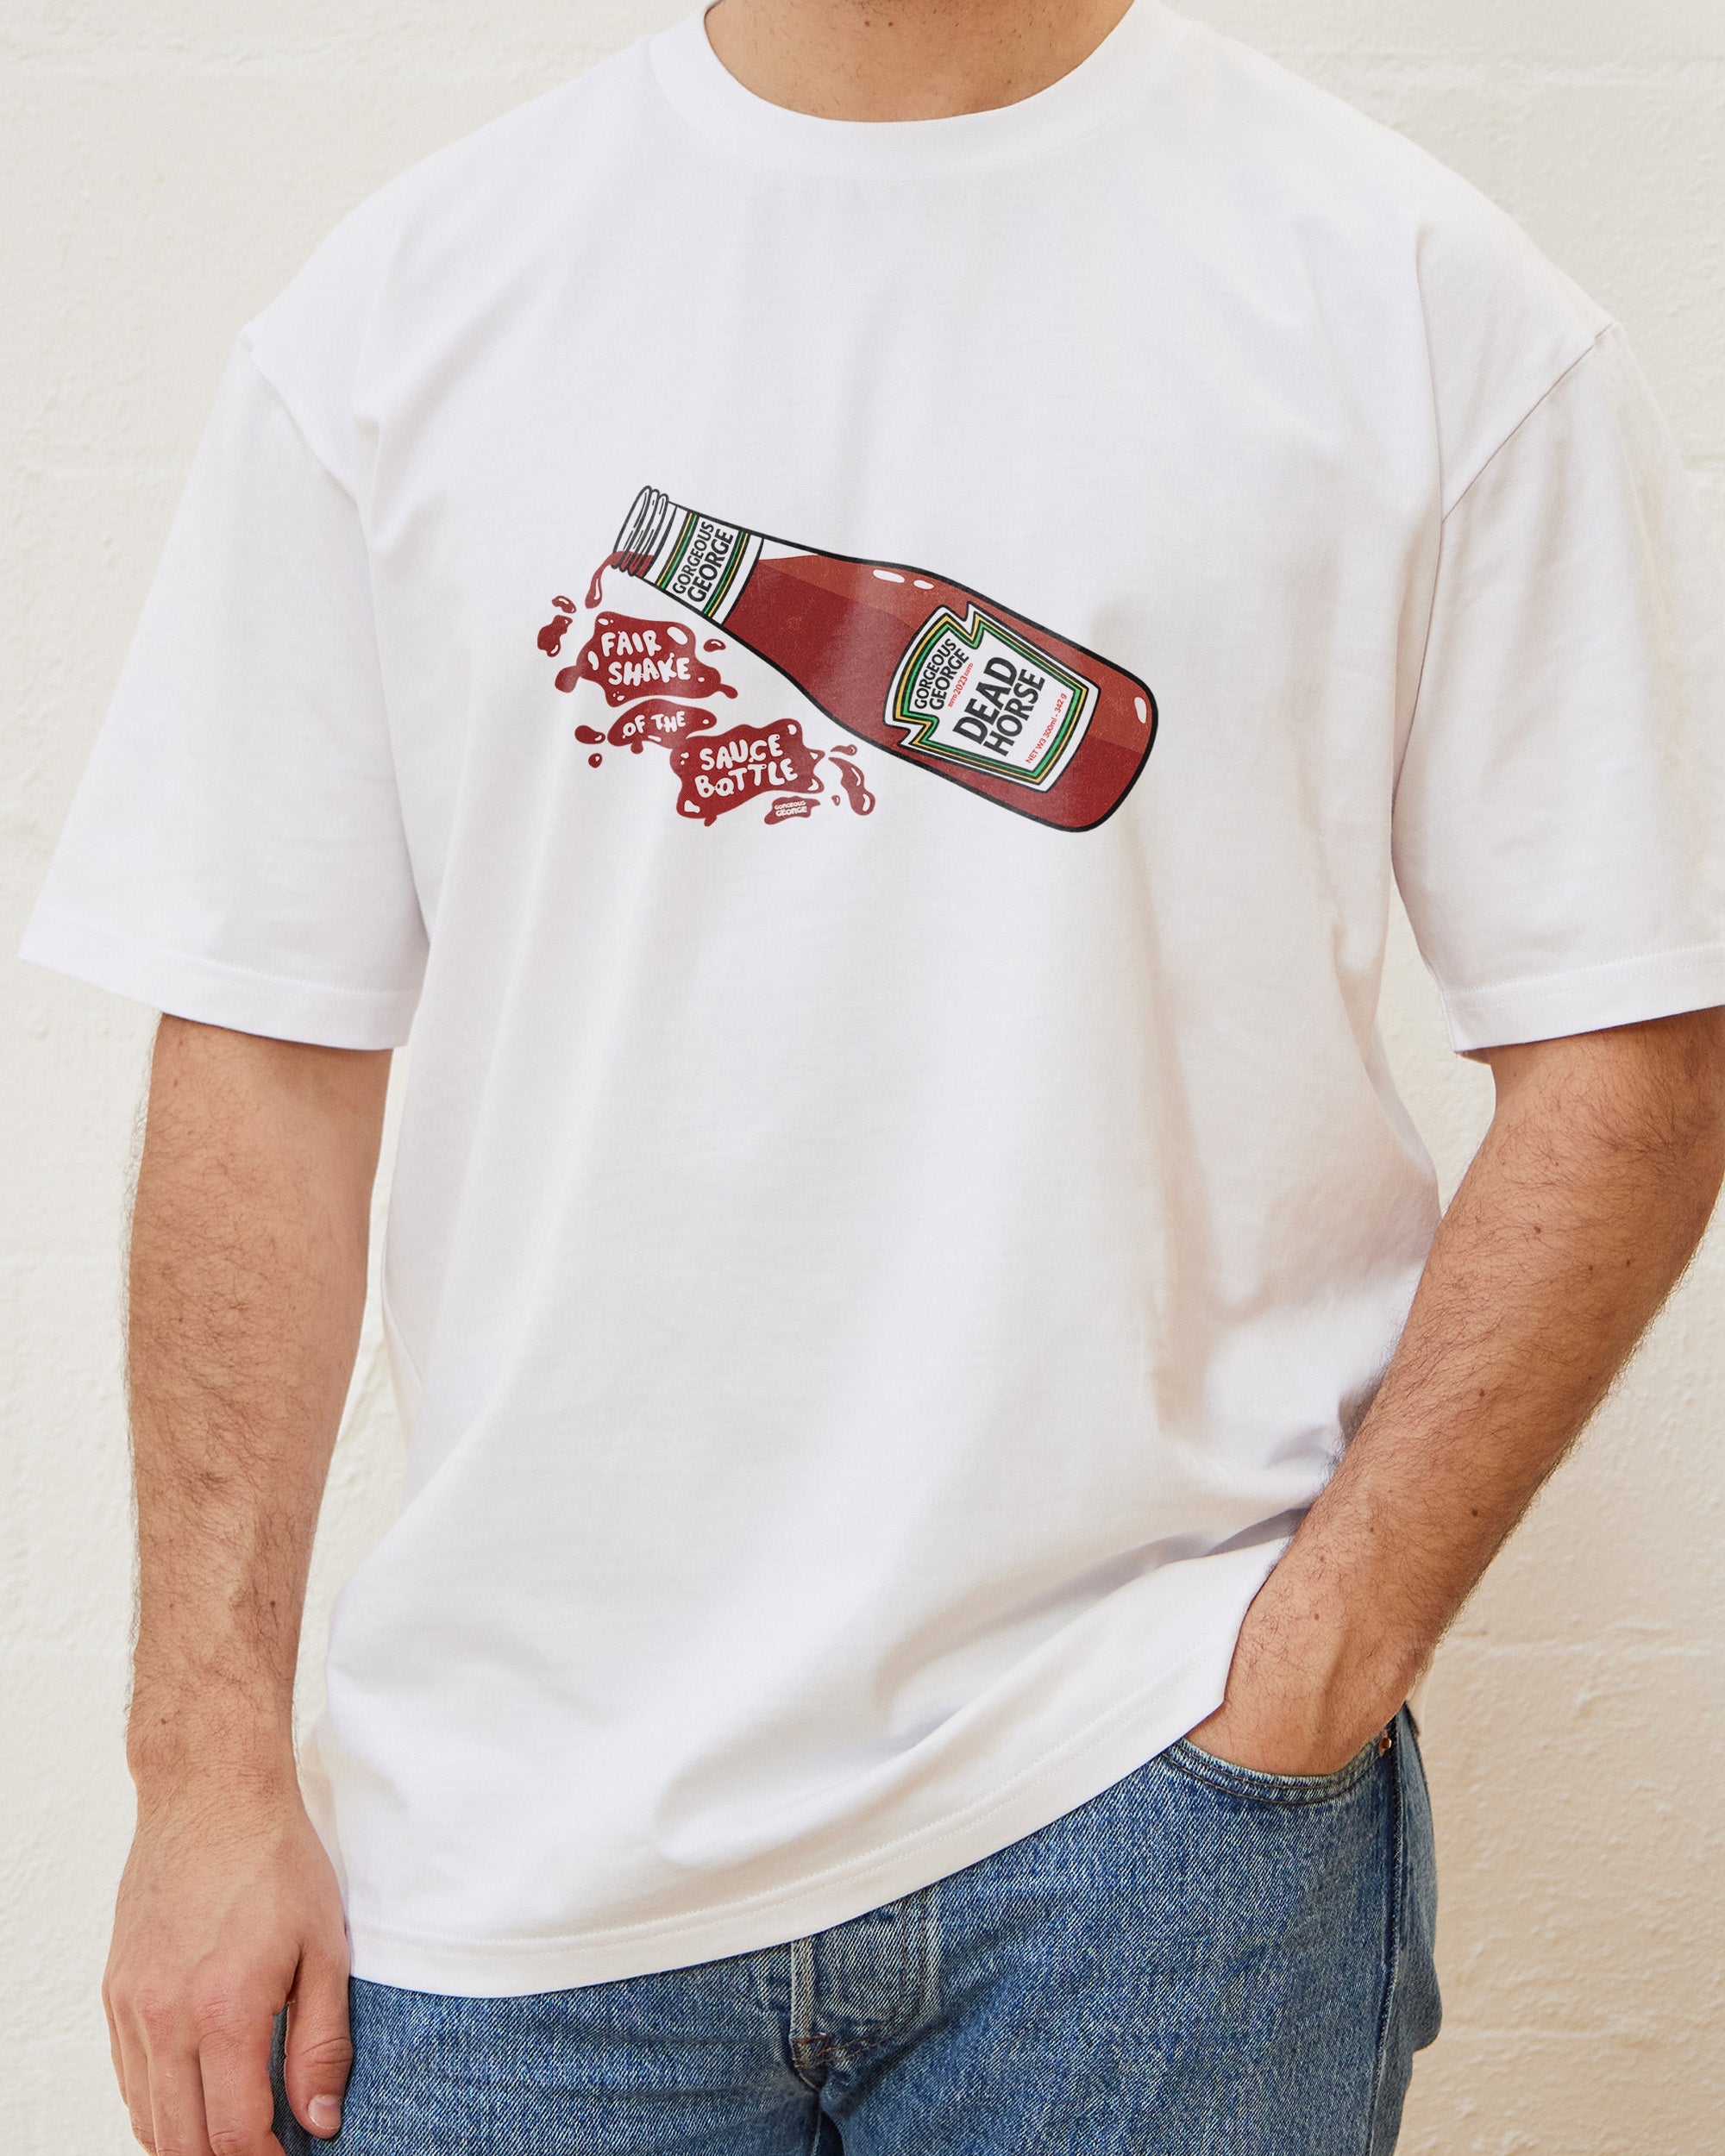 Fair Shake of the Sauce Bottle T-Shirt Australia Online White